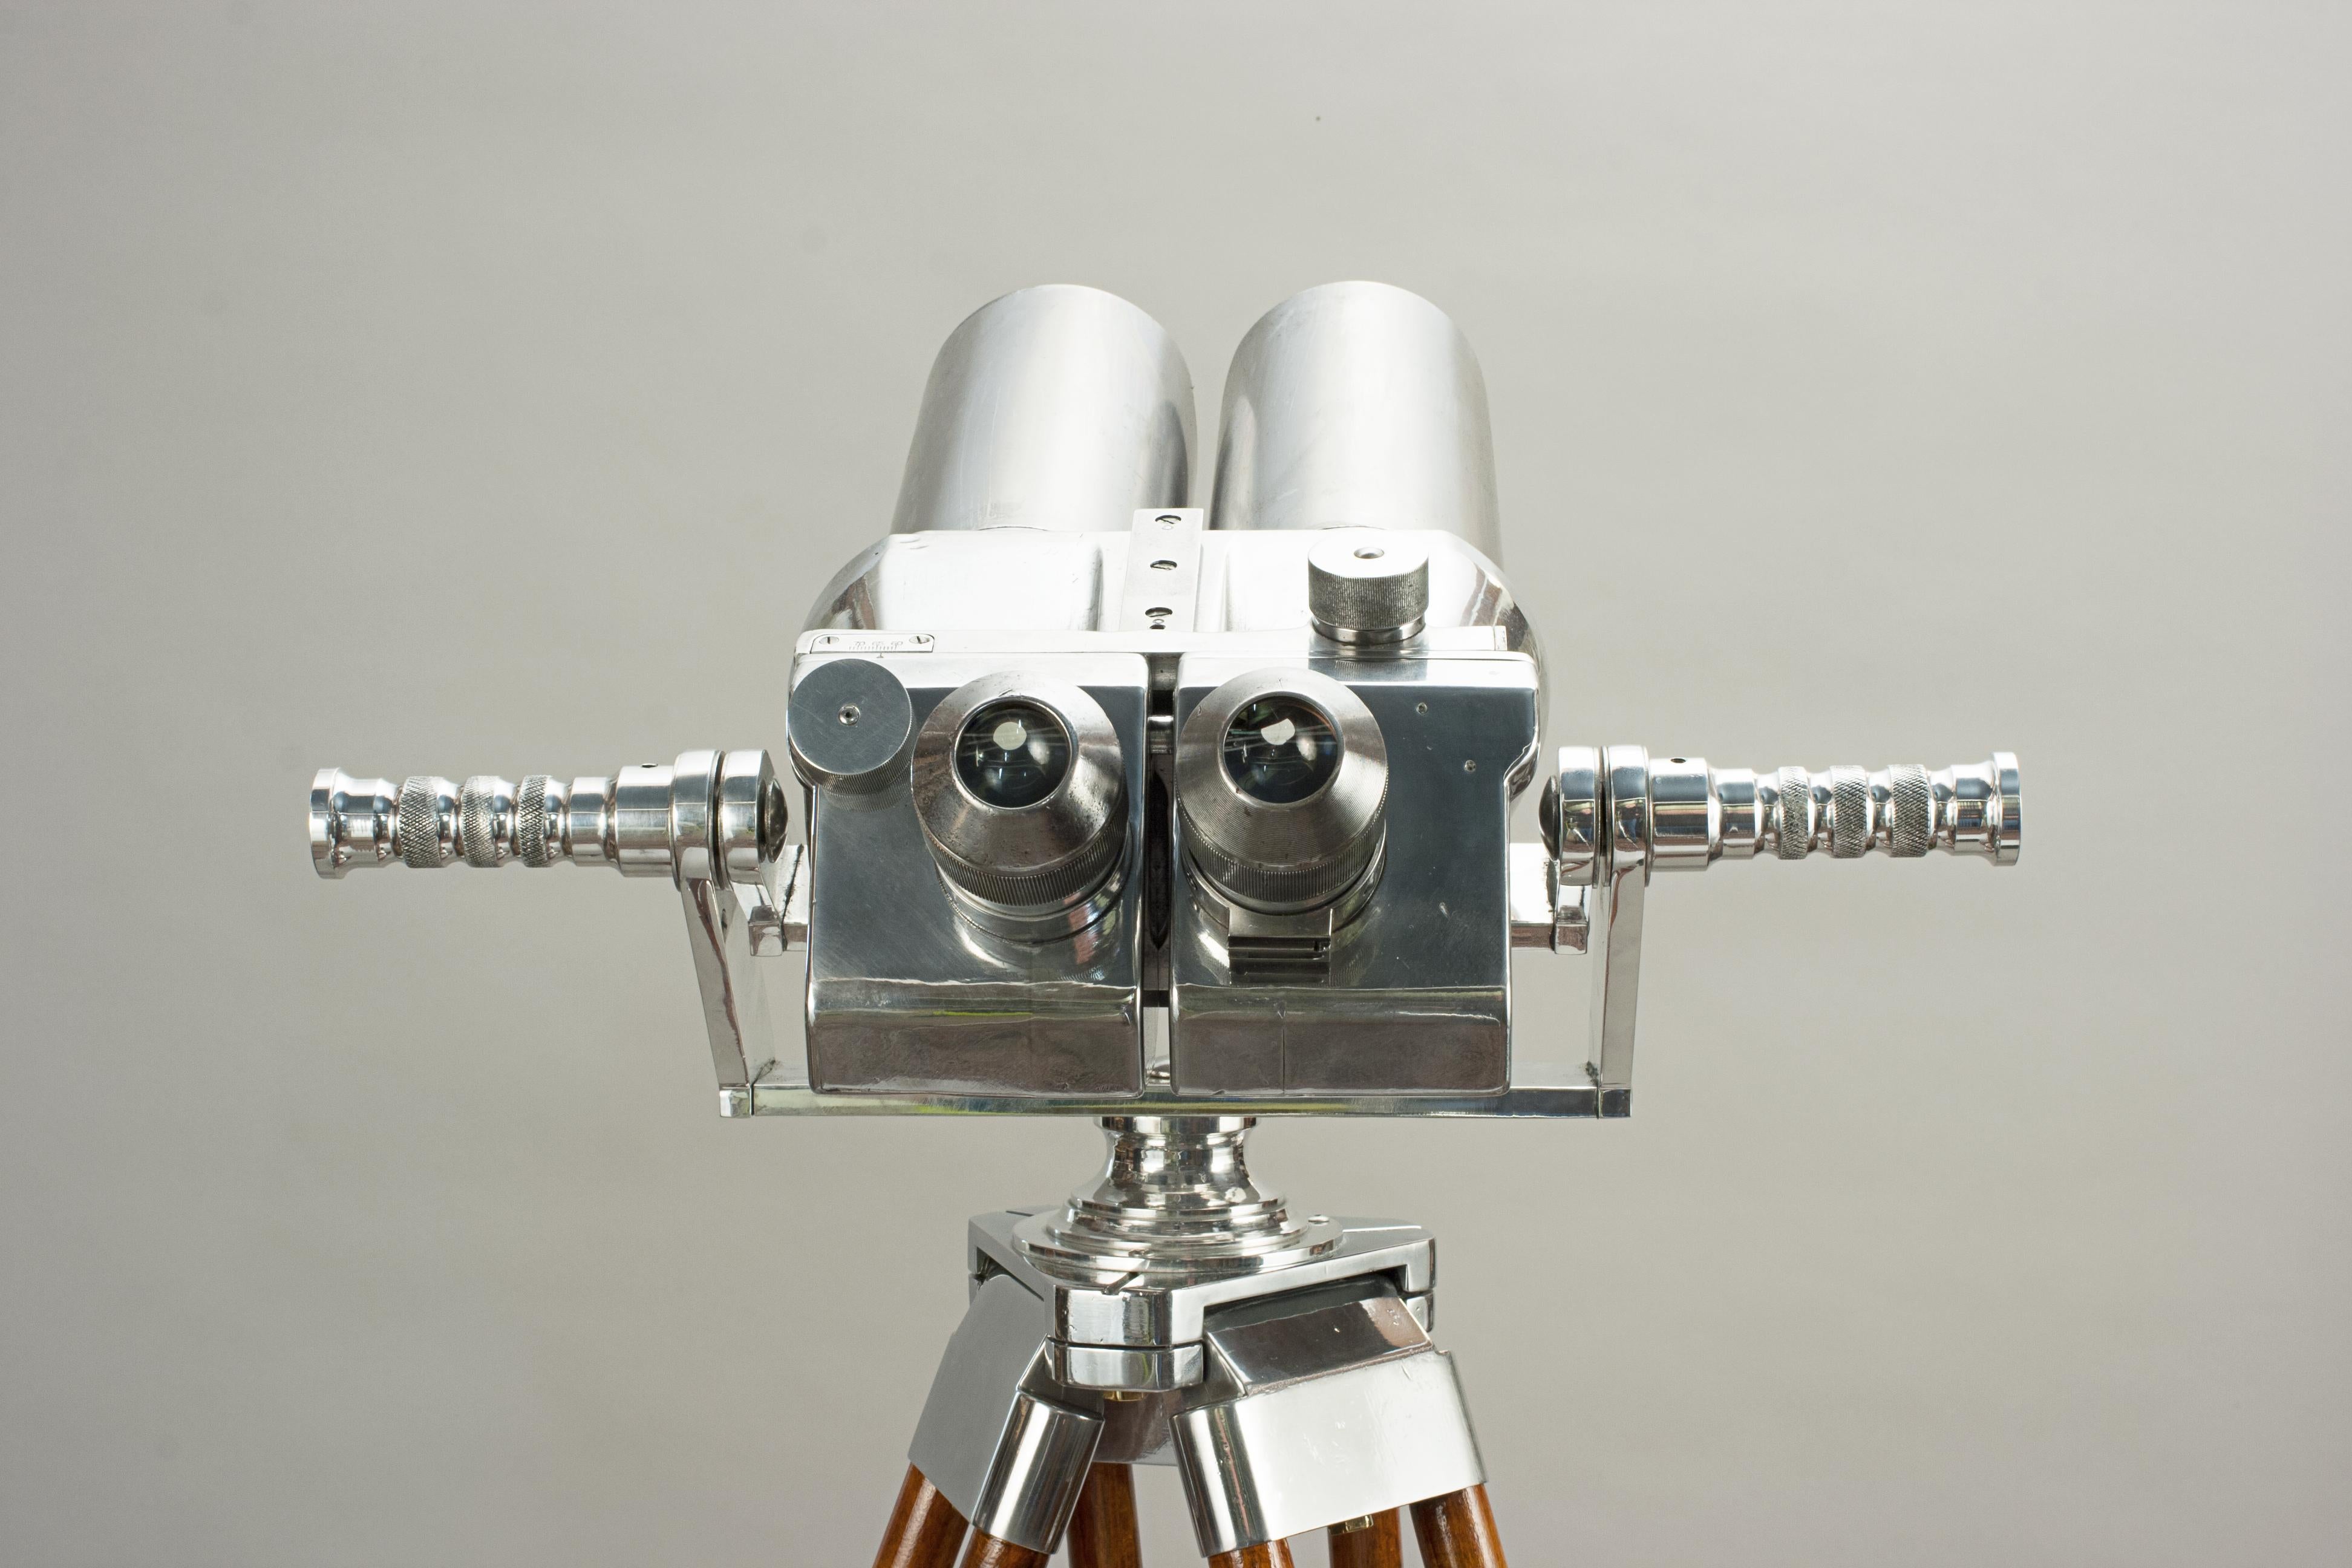 Mid-20th Century German Schneider Observation Binoculars, on Wooden Tripod Stand